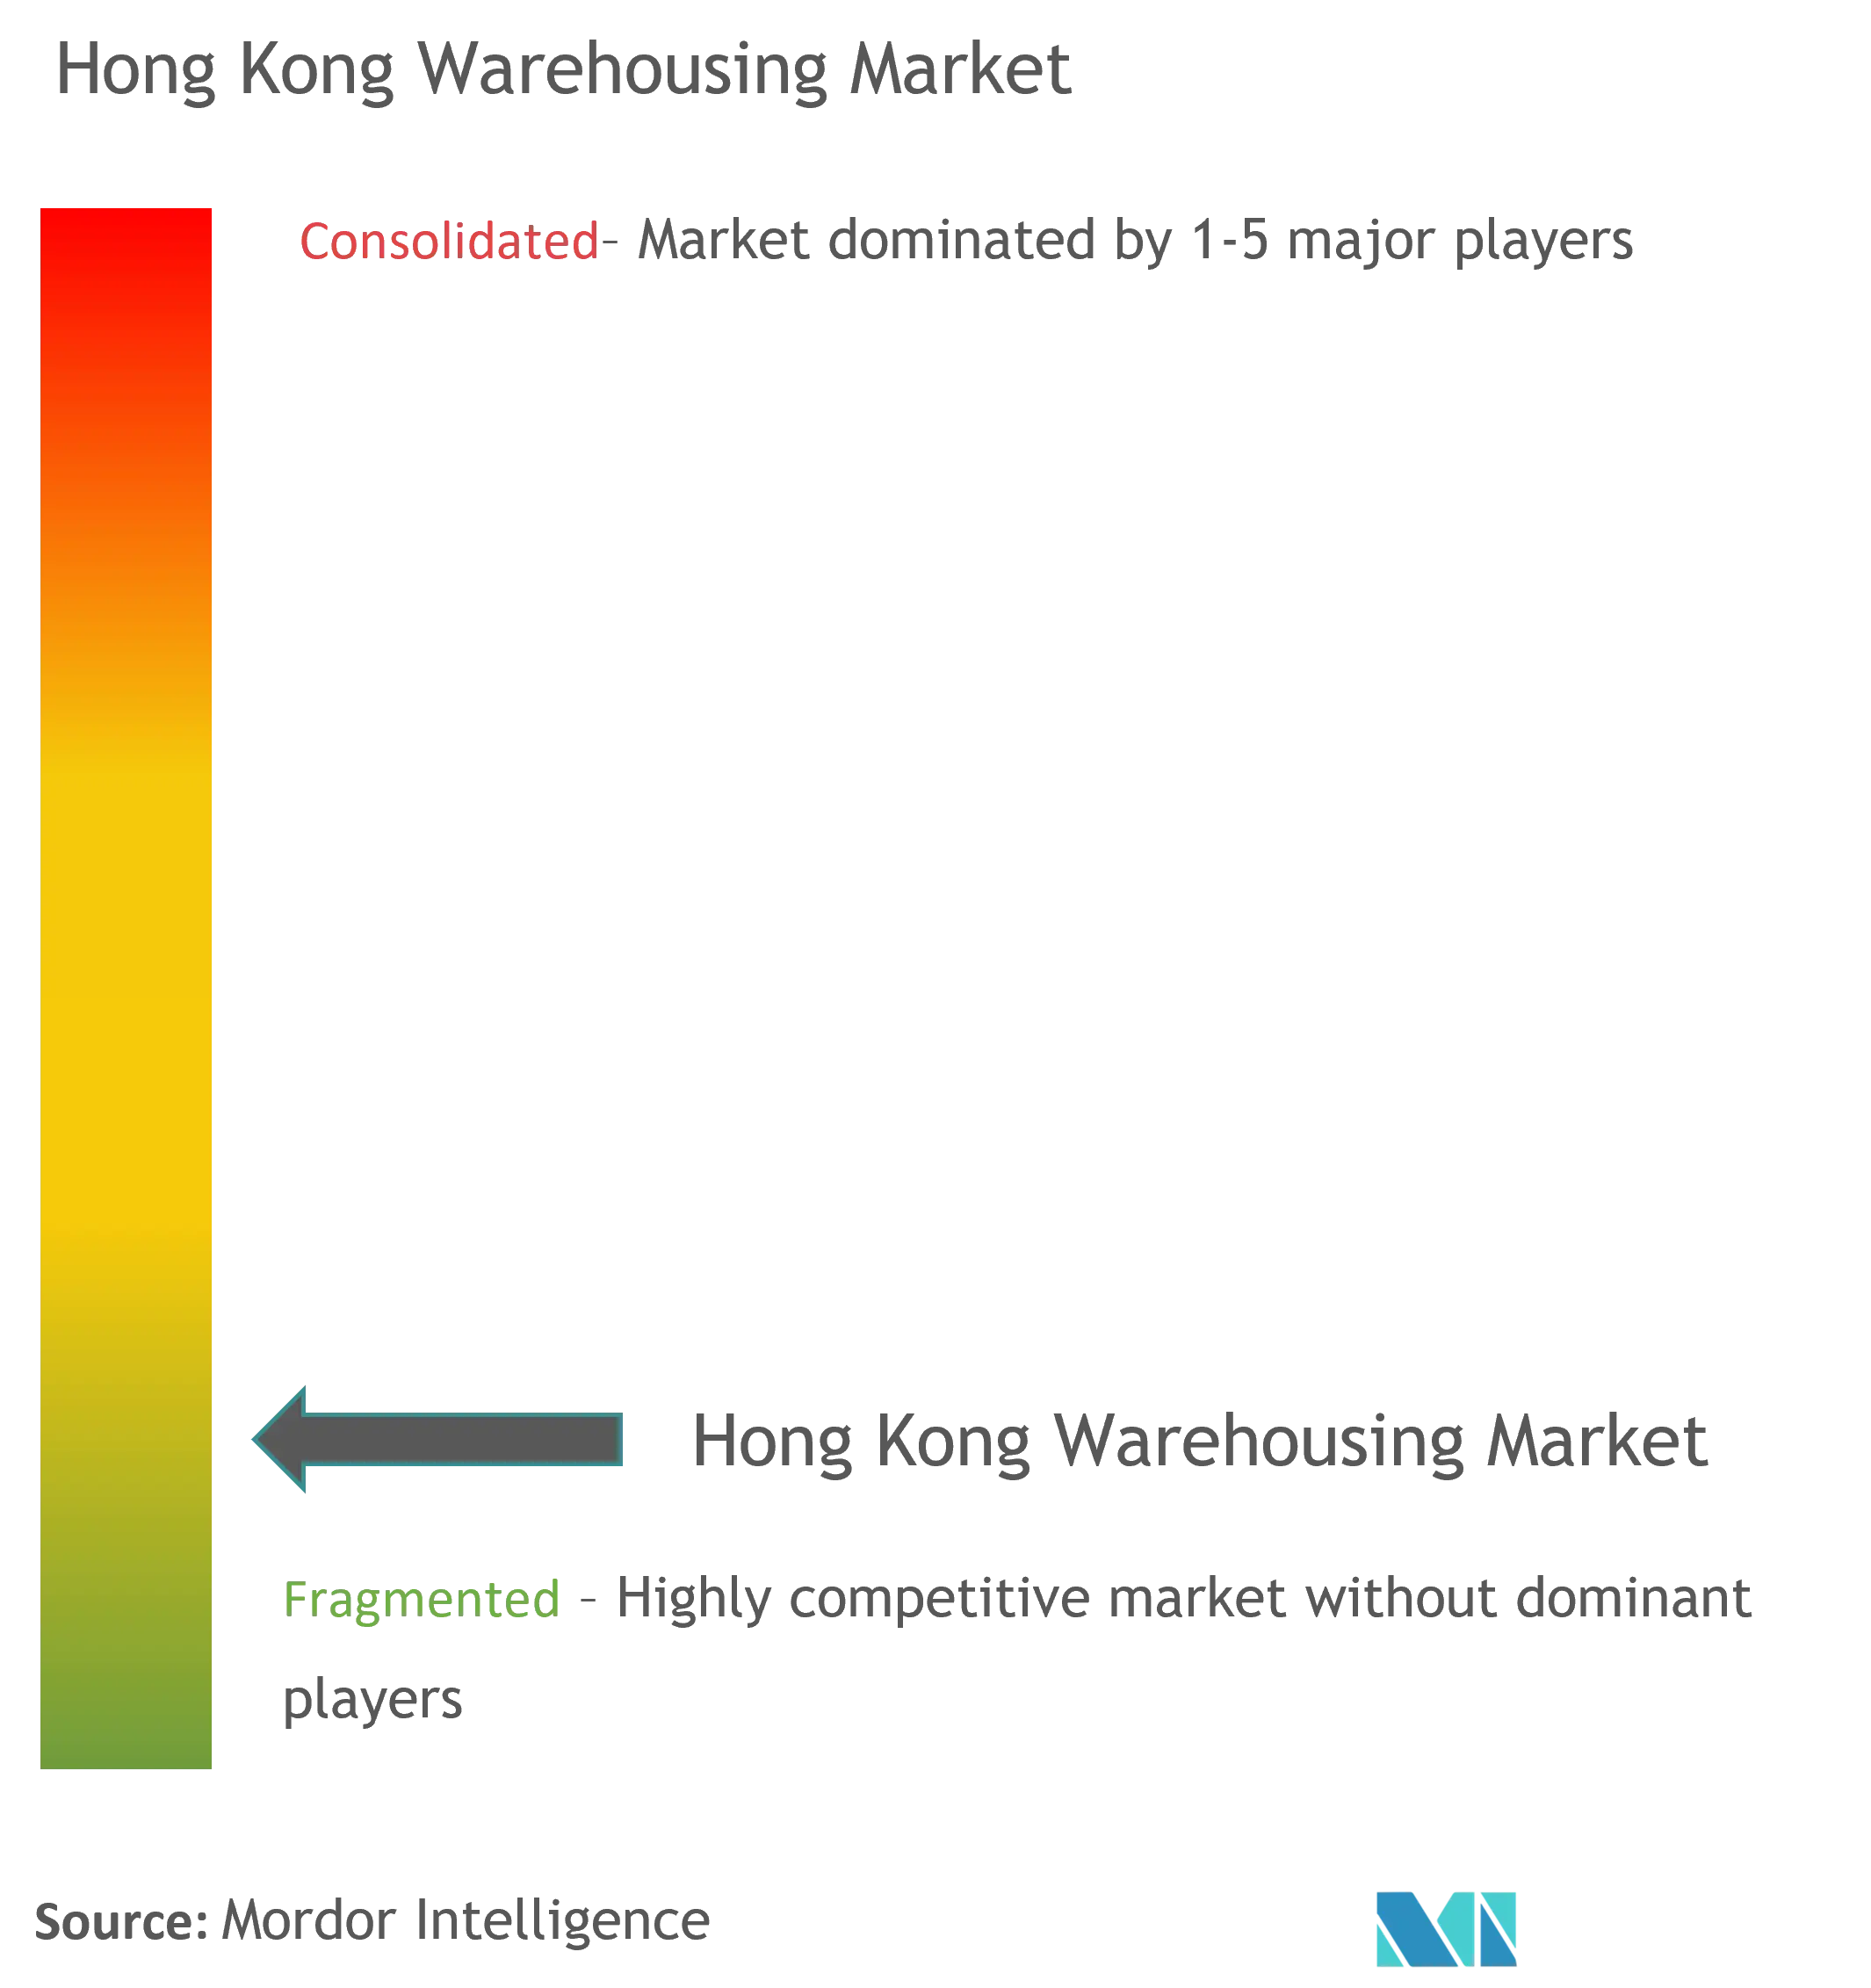 Hong Kong Warehousing Market Concentration